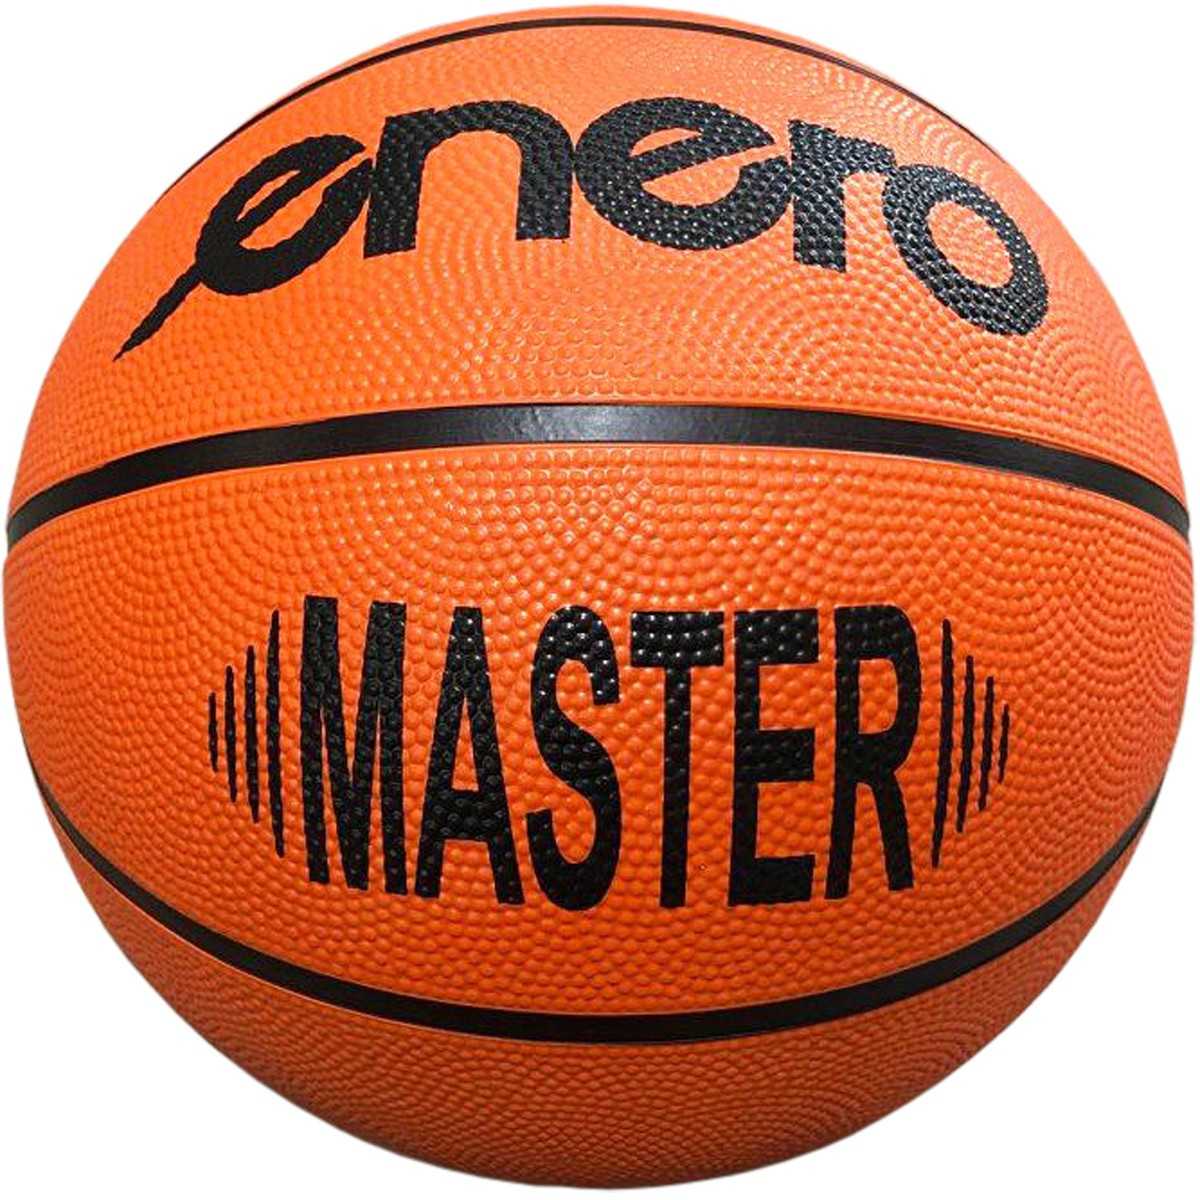 Enero Master krepšinio kamuolys, 6